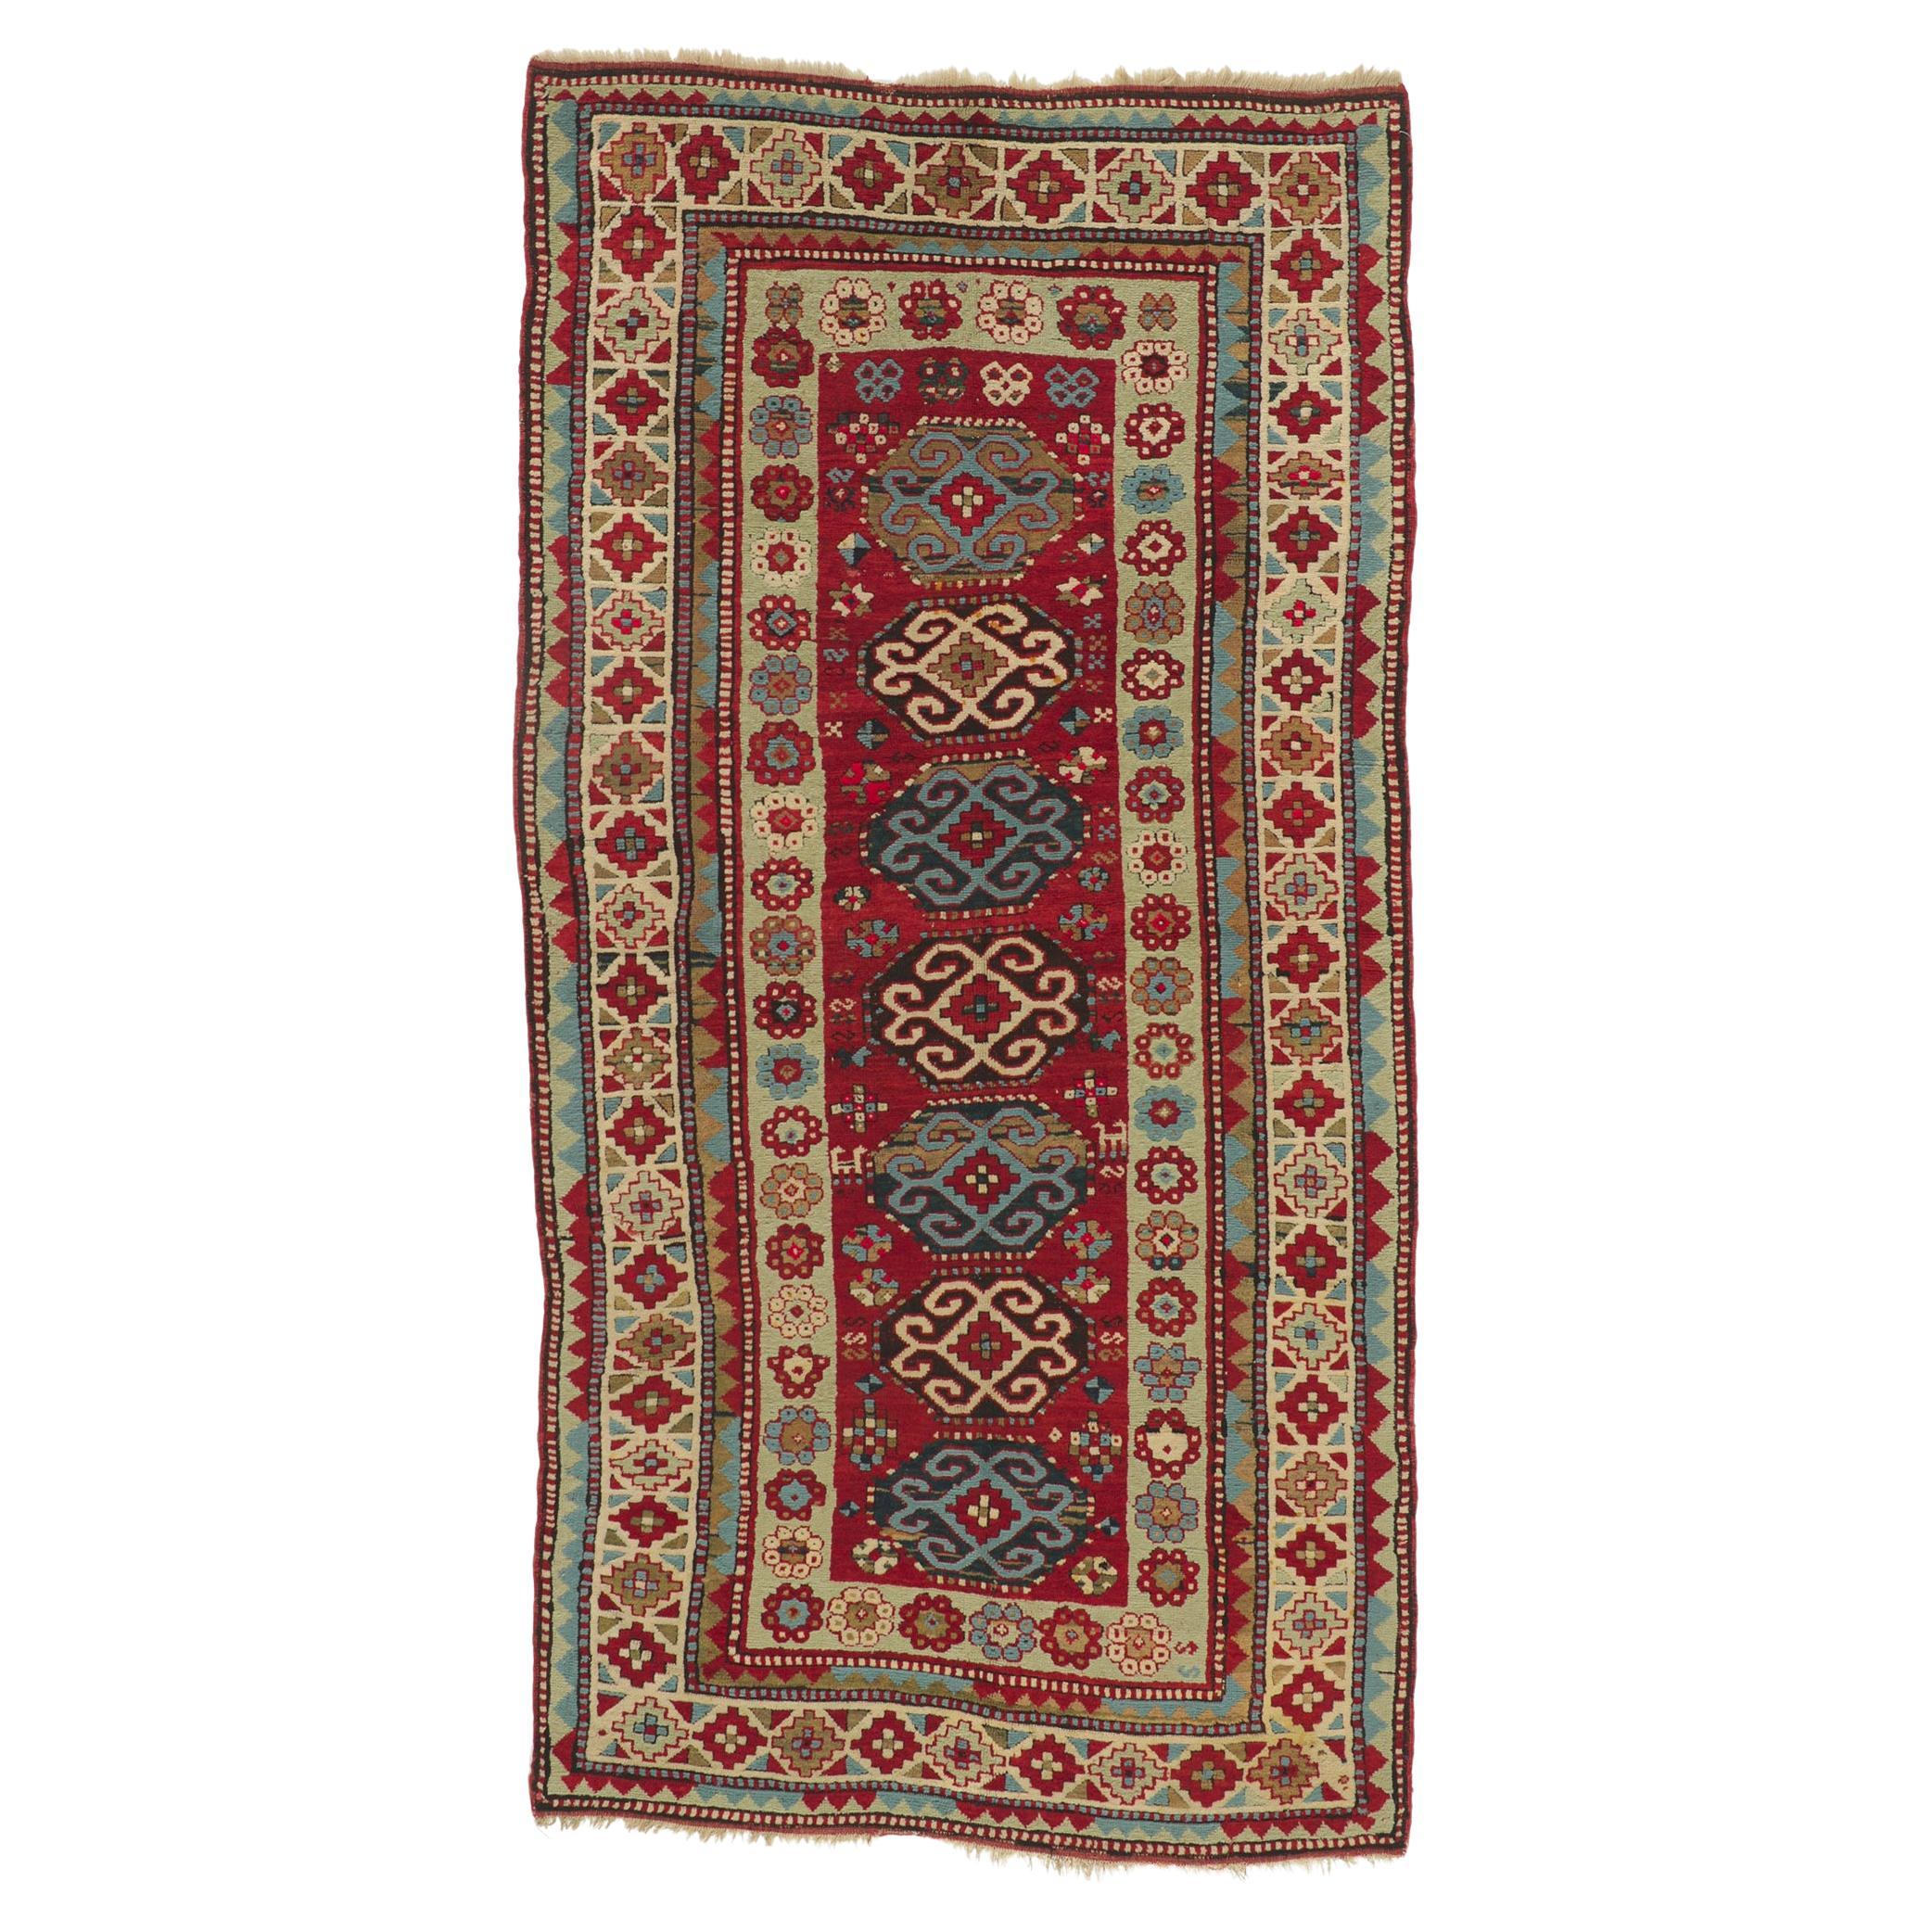 Antique Caucasian Kazak Rug Russian Tribal Carpet